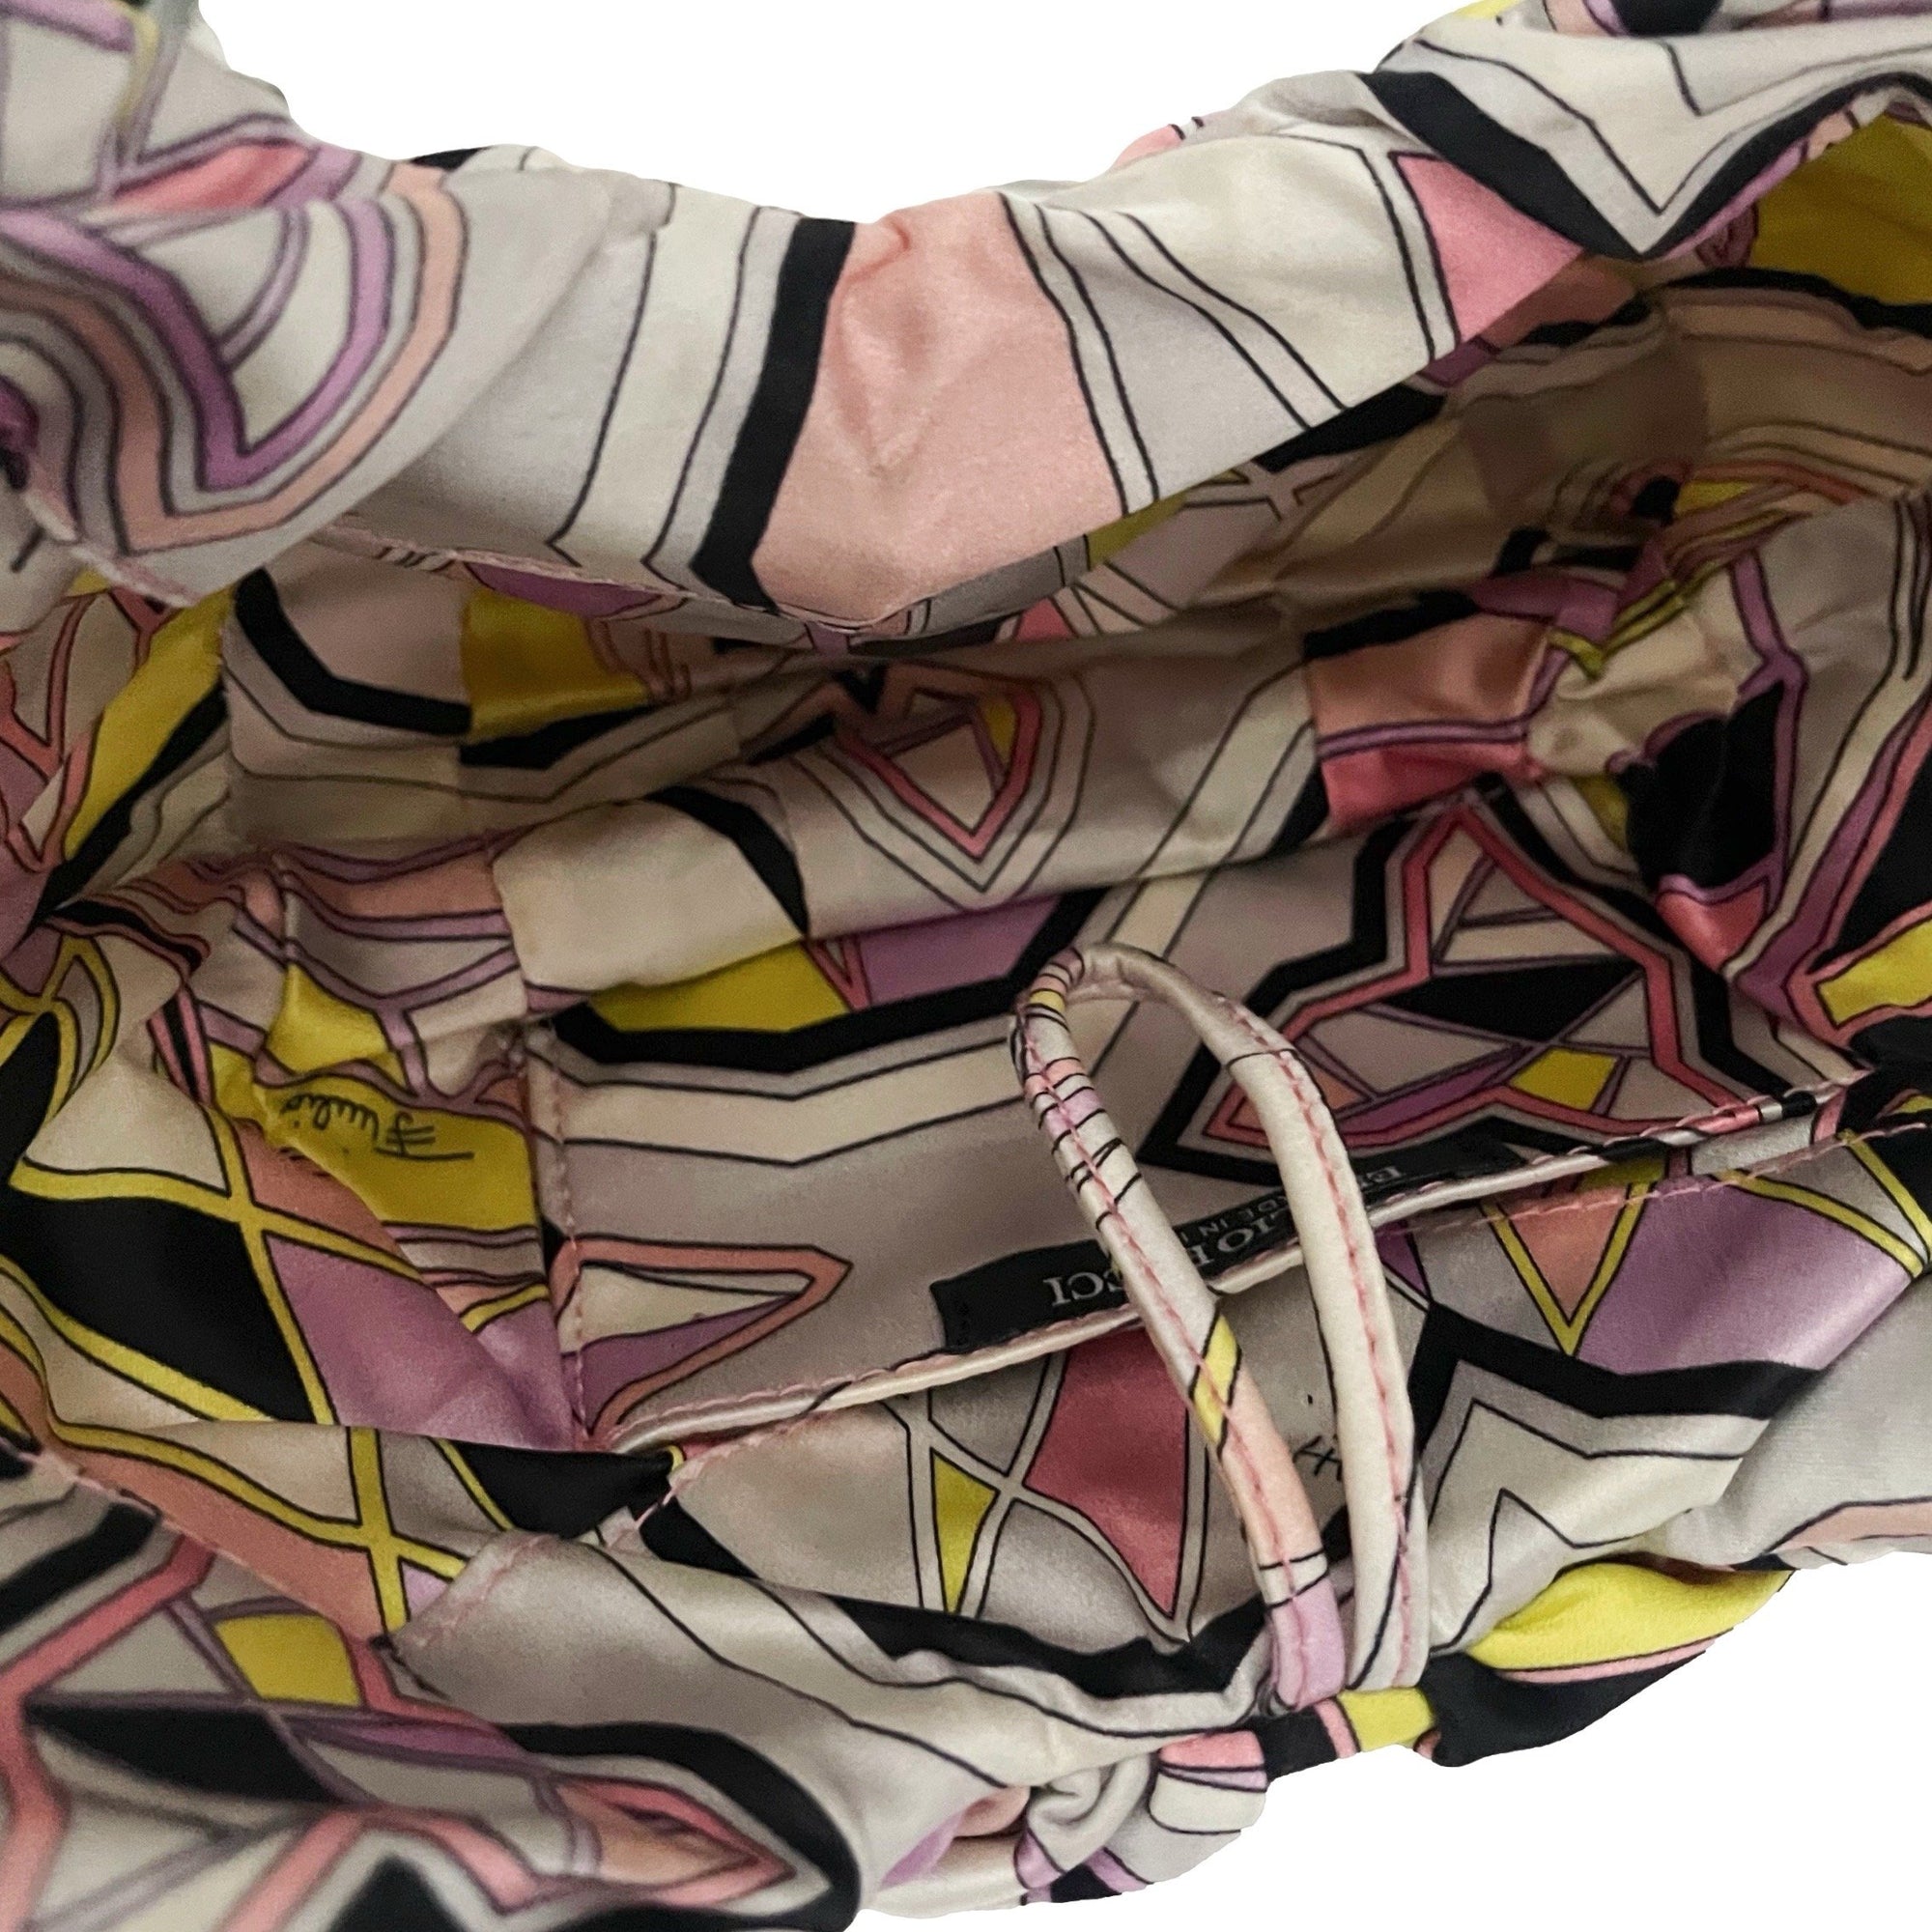 Pucci Multicolor Slinky Top Handle - Handbags